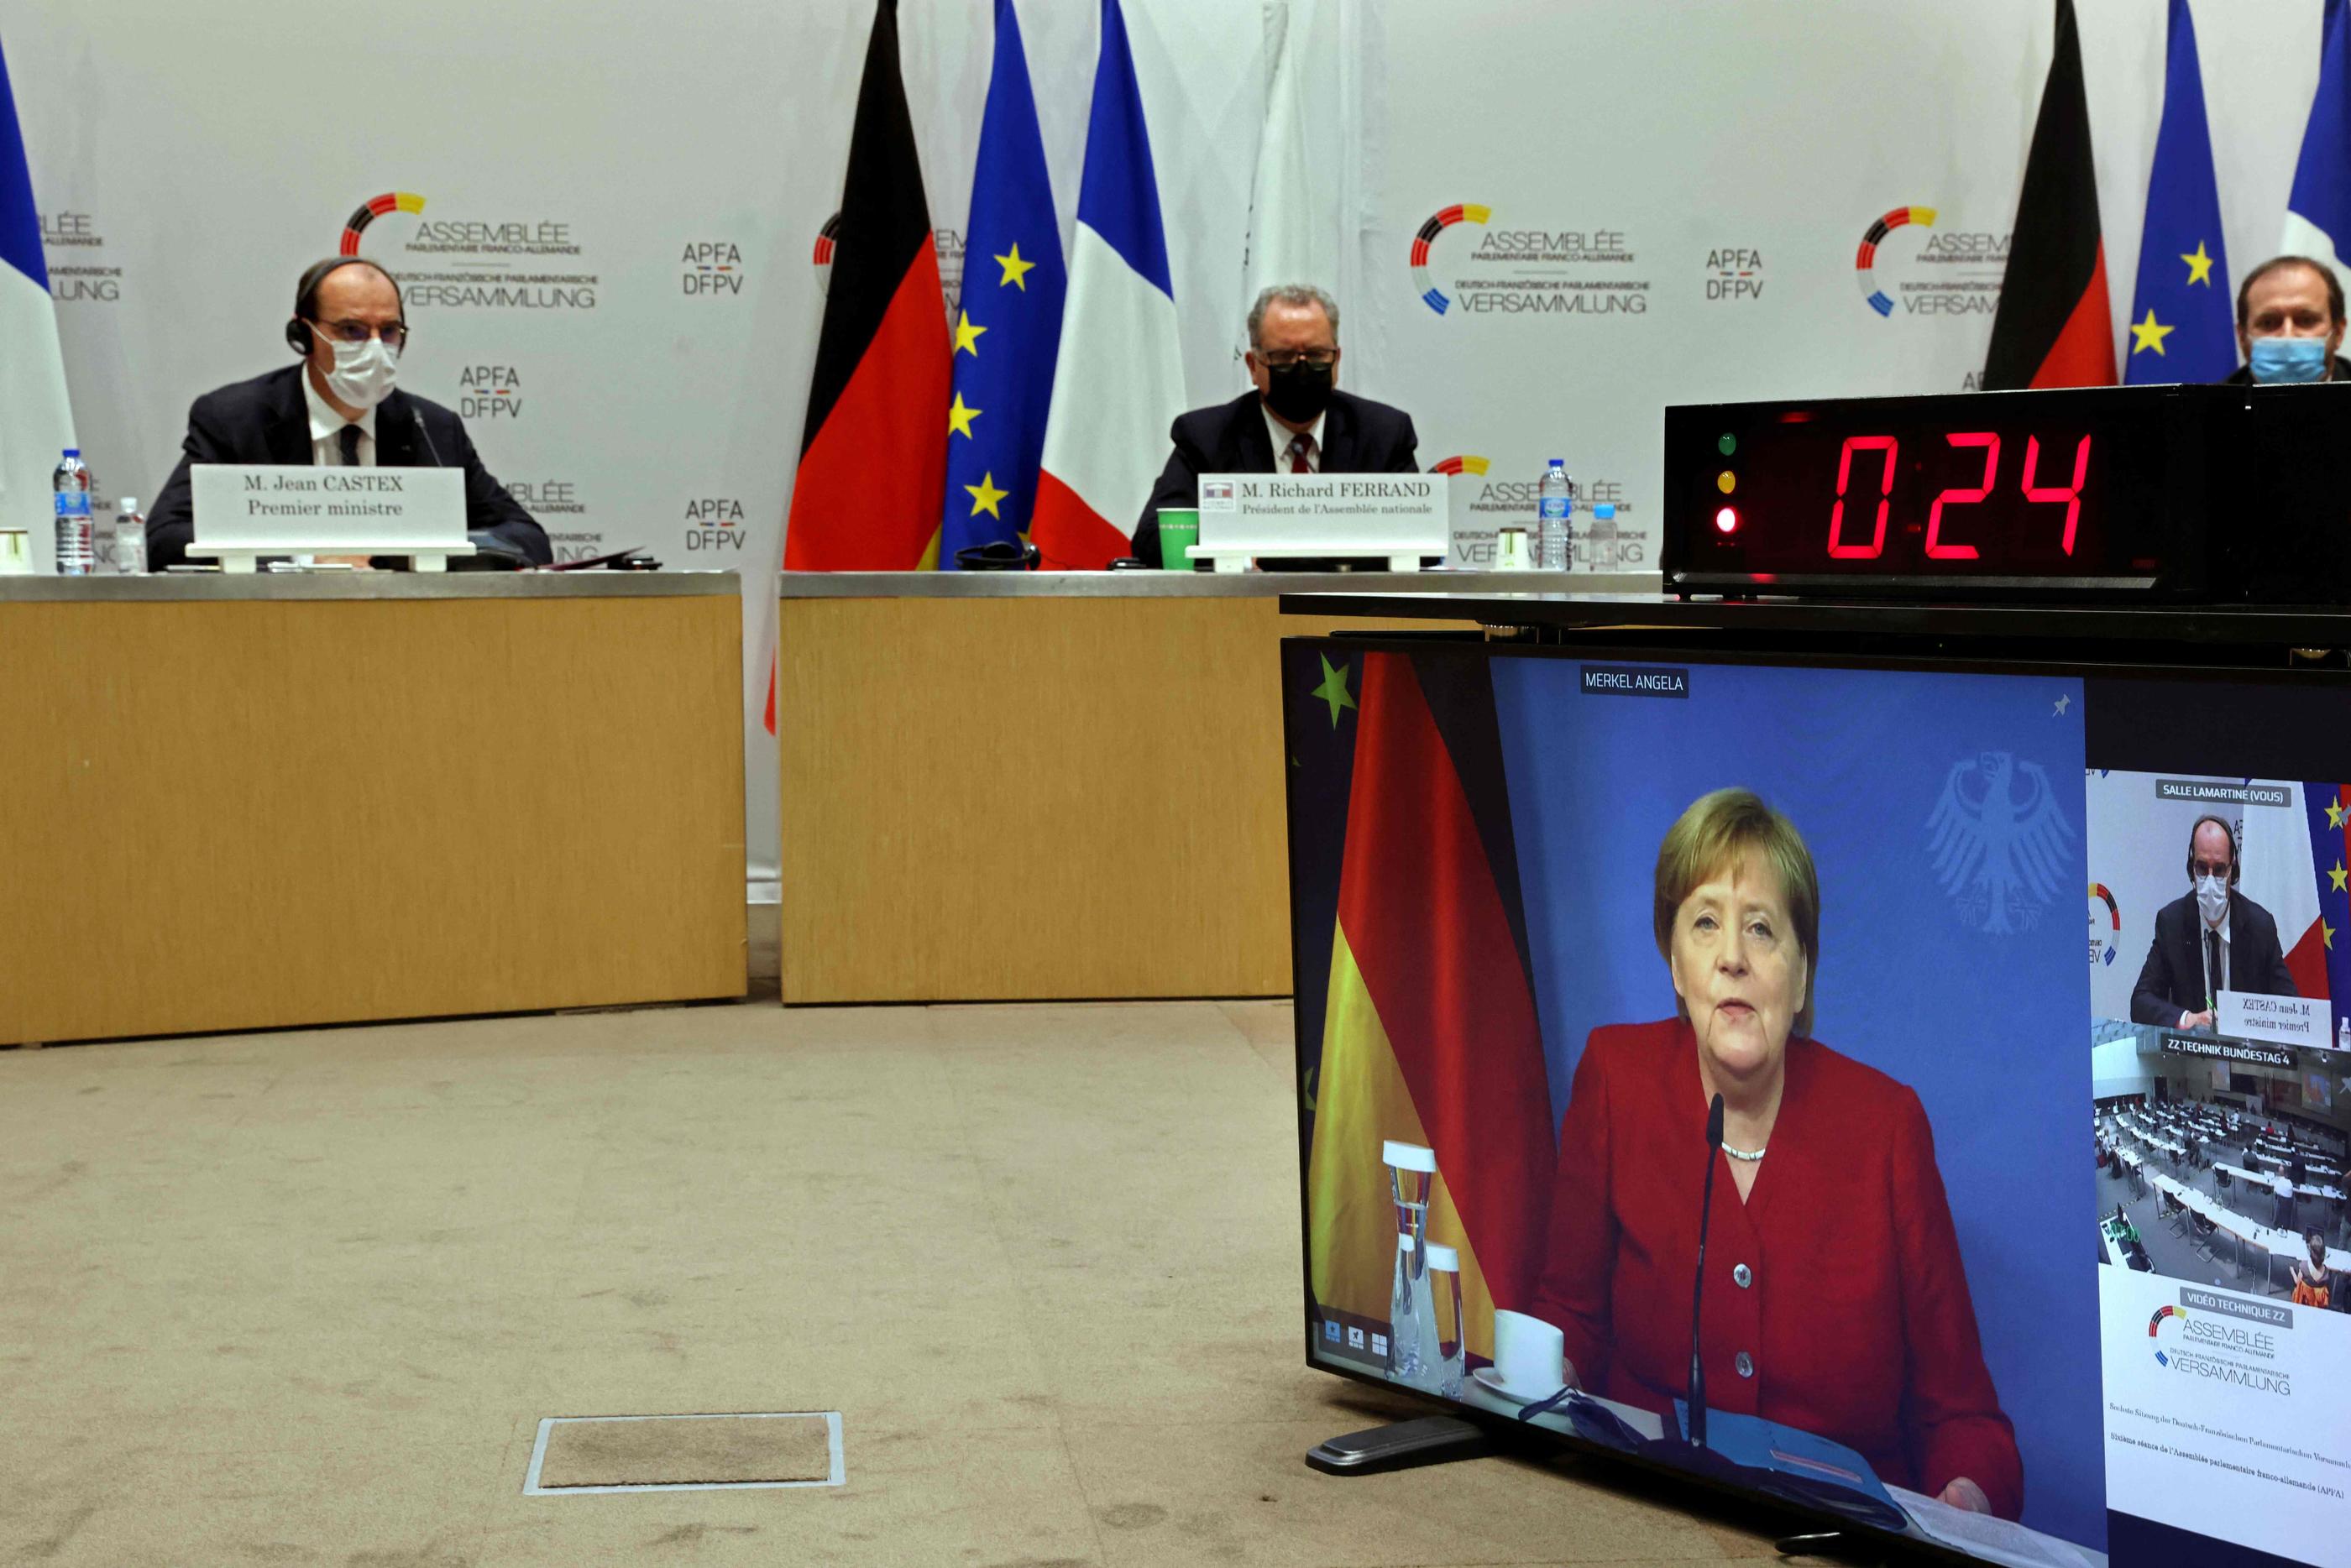 Paris, lundi. Le Premier ministre, Jean Castex (à gauche), participe à l'Assemblée parlementaire franco-allemande avec la chancelière allemande Angela Merkel (à l'écran). AFP/Thomas Coex